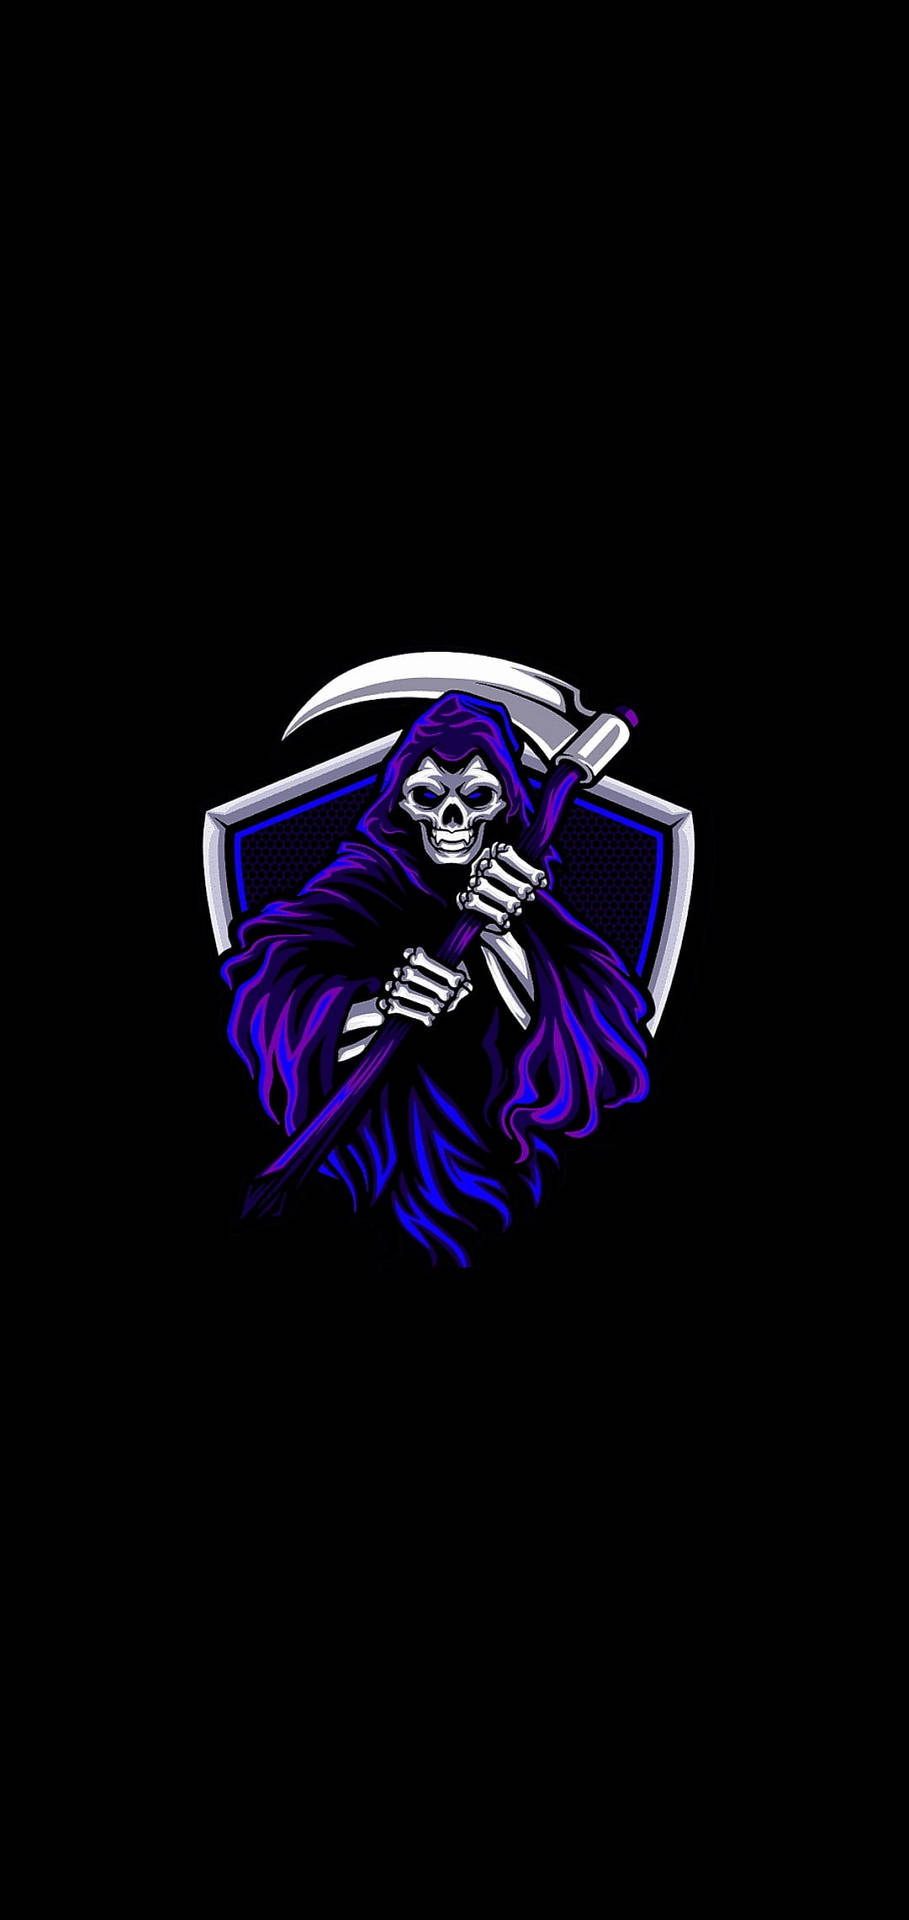 Grim Reaper Gaming Logo Hd Wallpaper